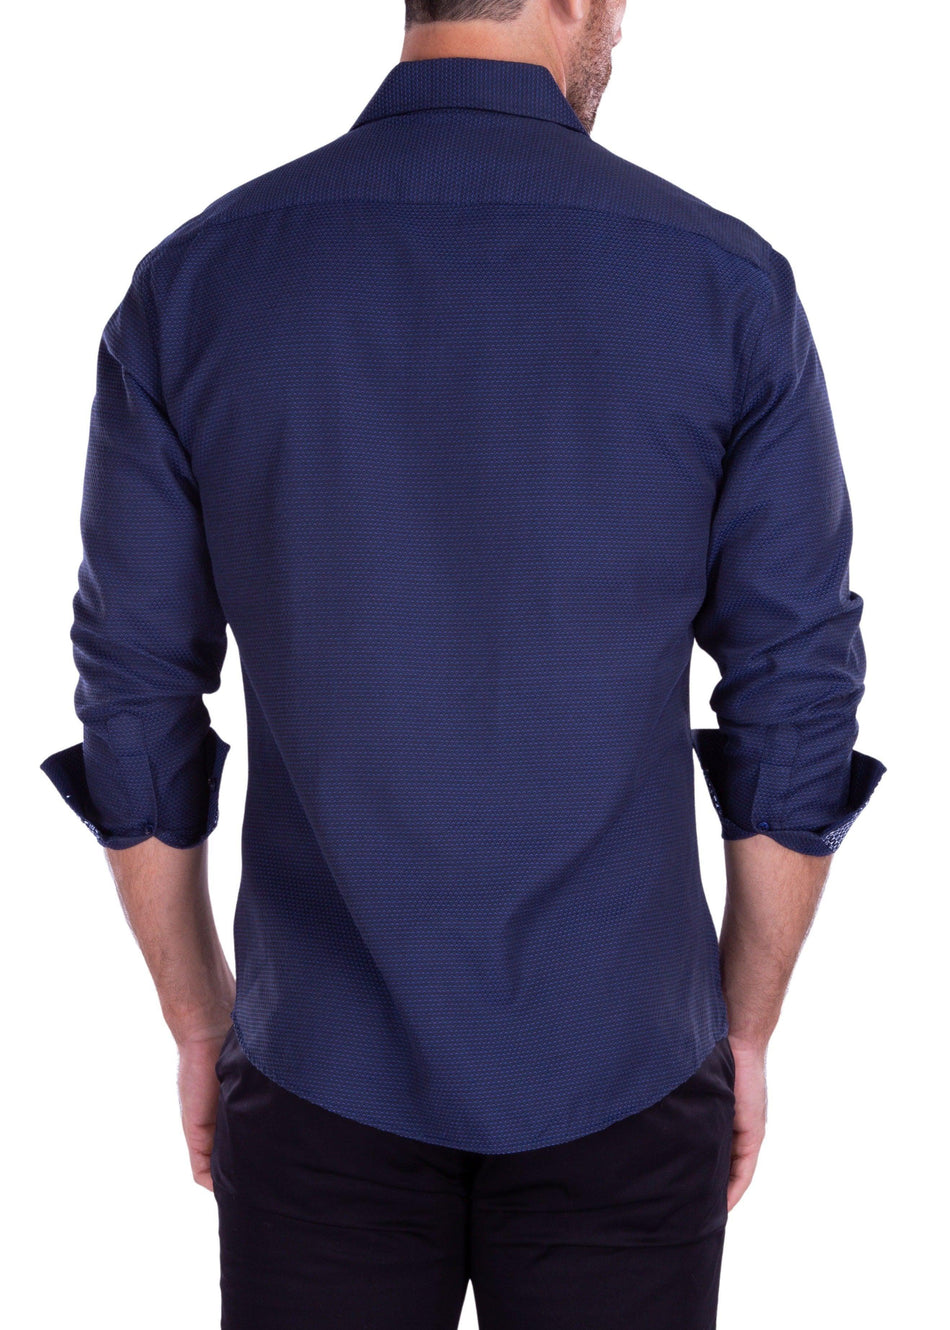 Mesh Effect Microprint Long Sleeve Dress Shirt Navy